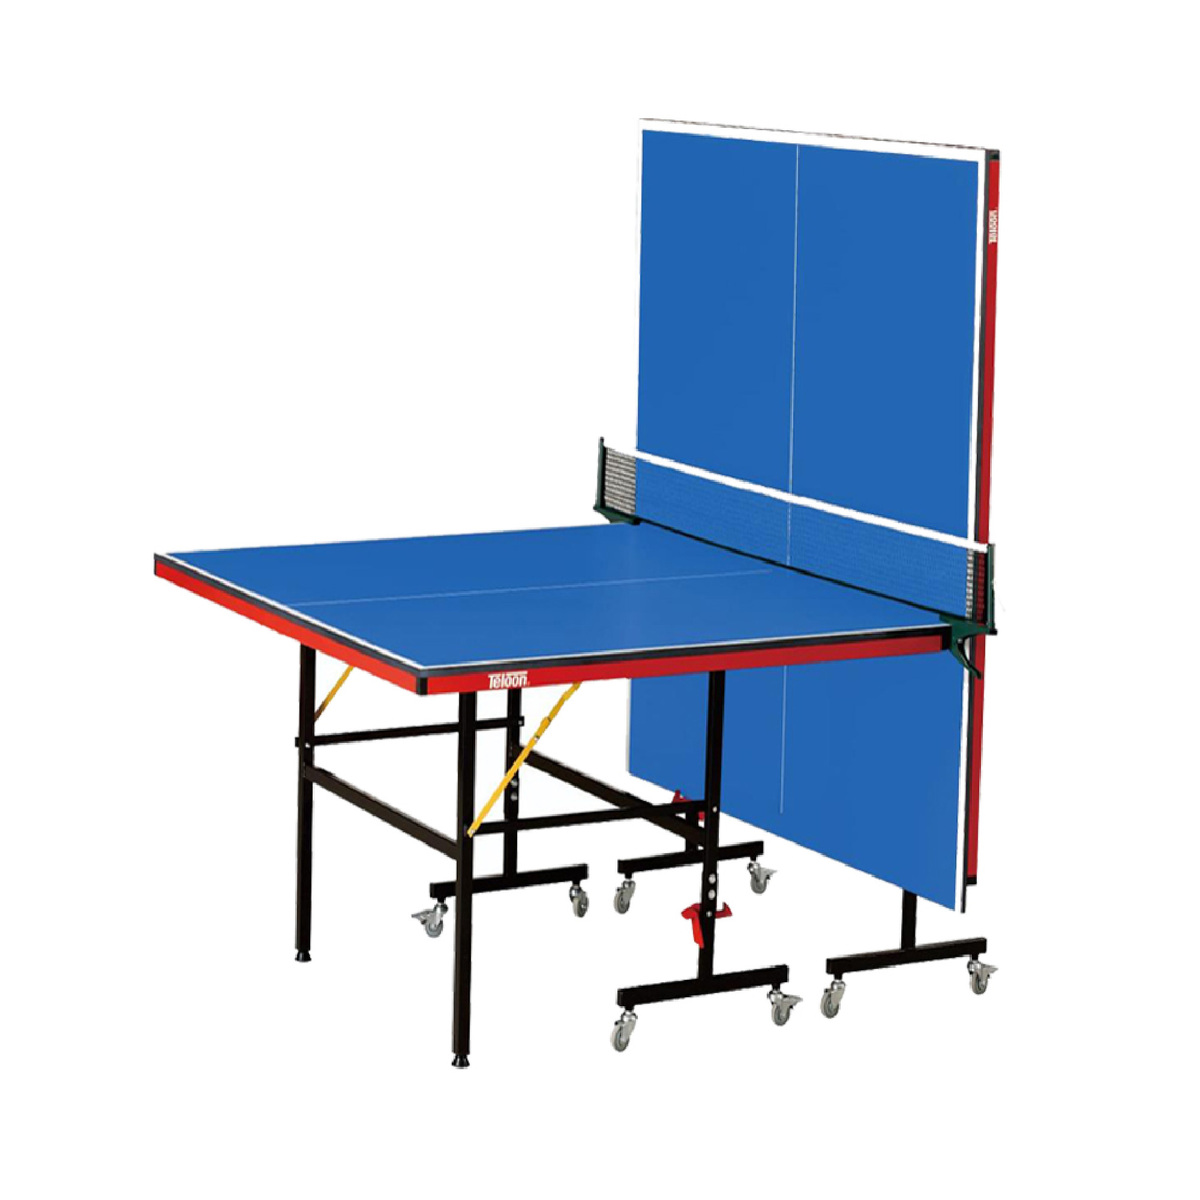 TeloonTable Tennis Table K2006